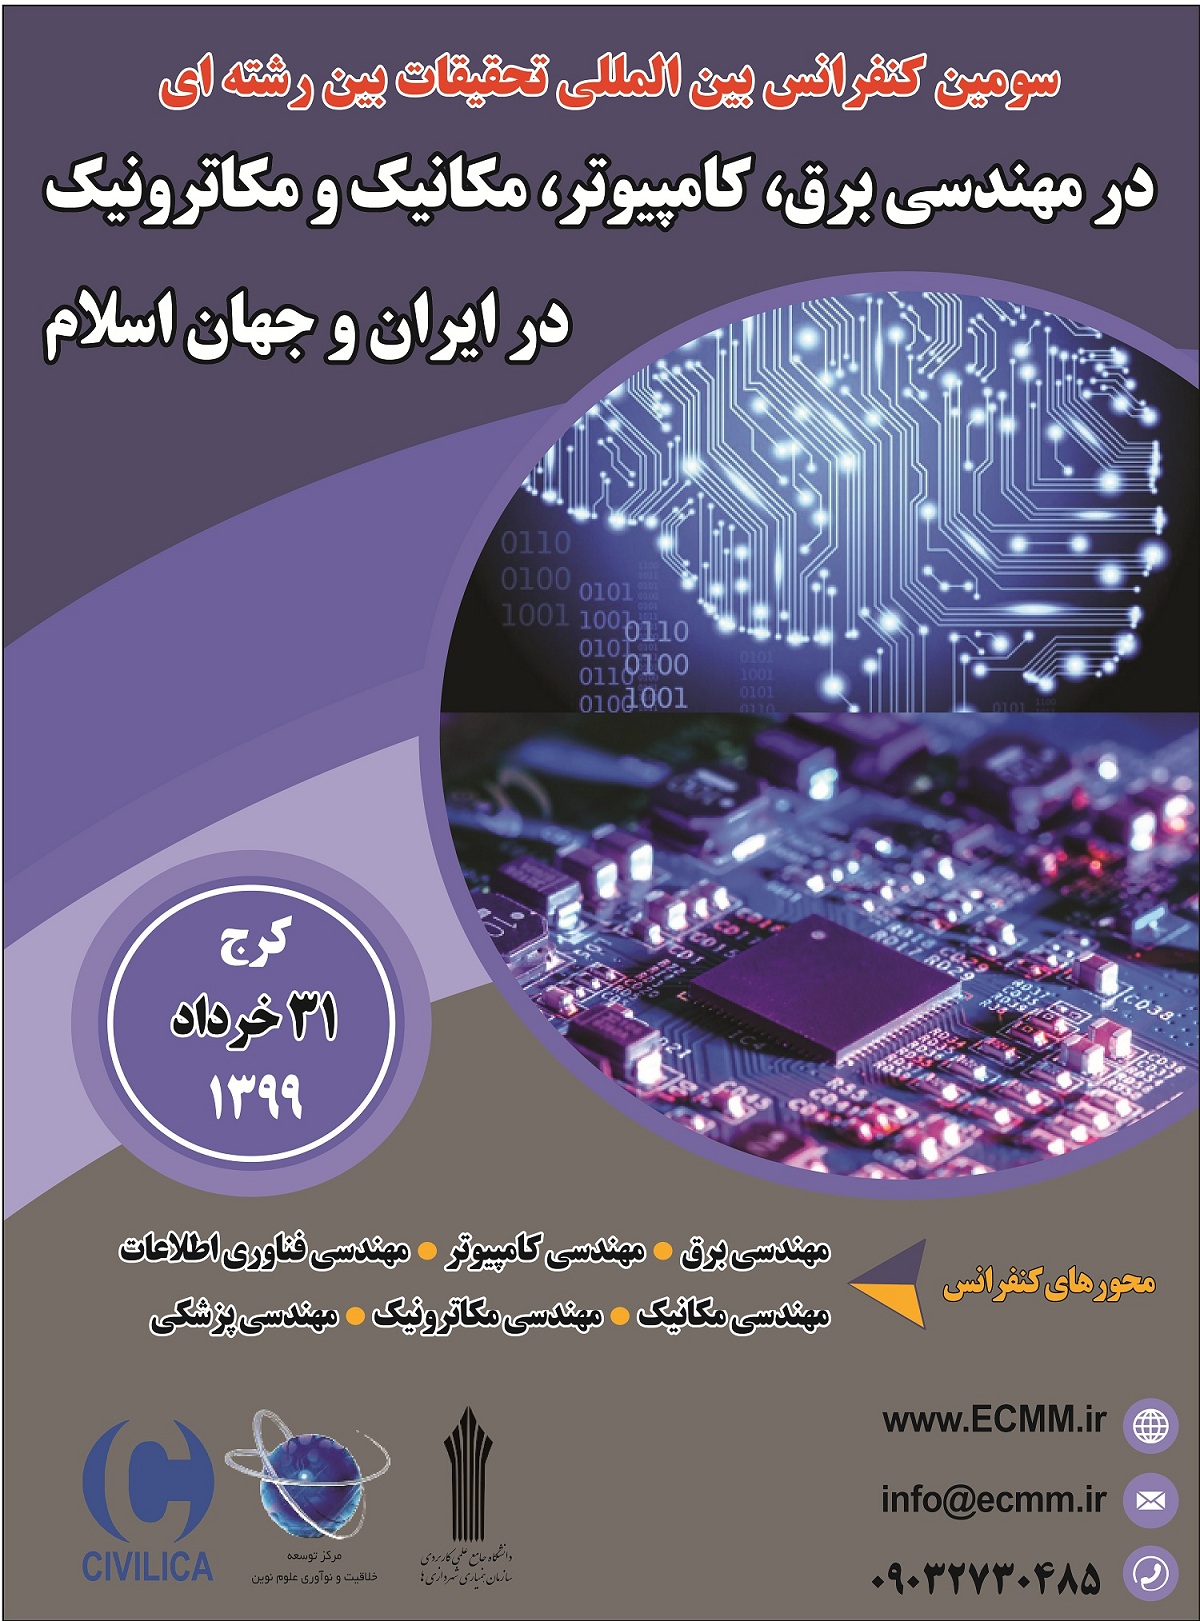 پوستر سومین کنفرانس بین المللی تحقیقات بین رشته ای در مهندسی برق، کامپیوتر، مکانیک و مکاترونیک در ایران و جهان اسلام